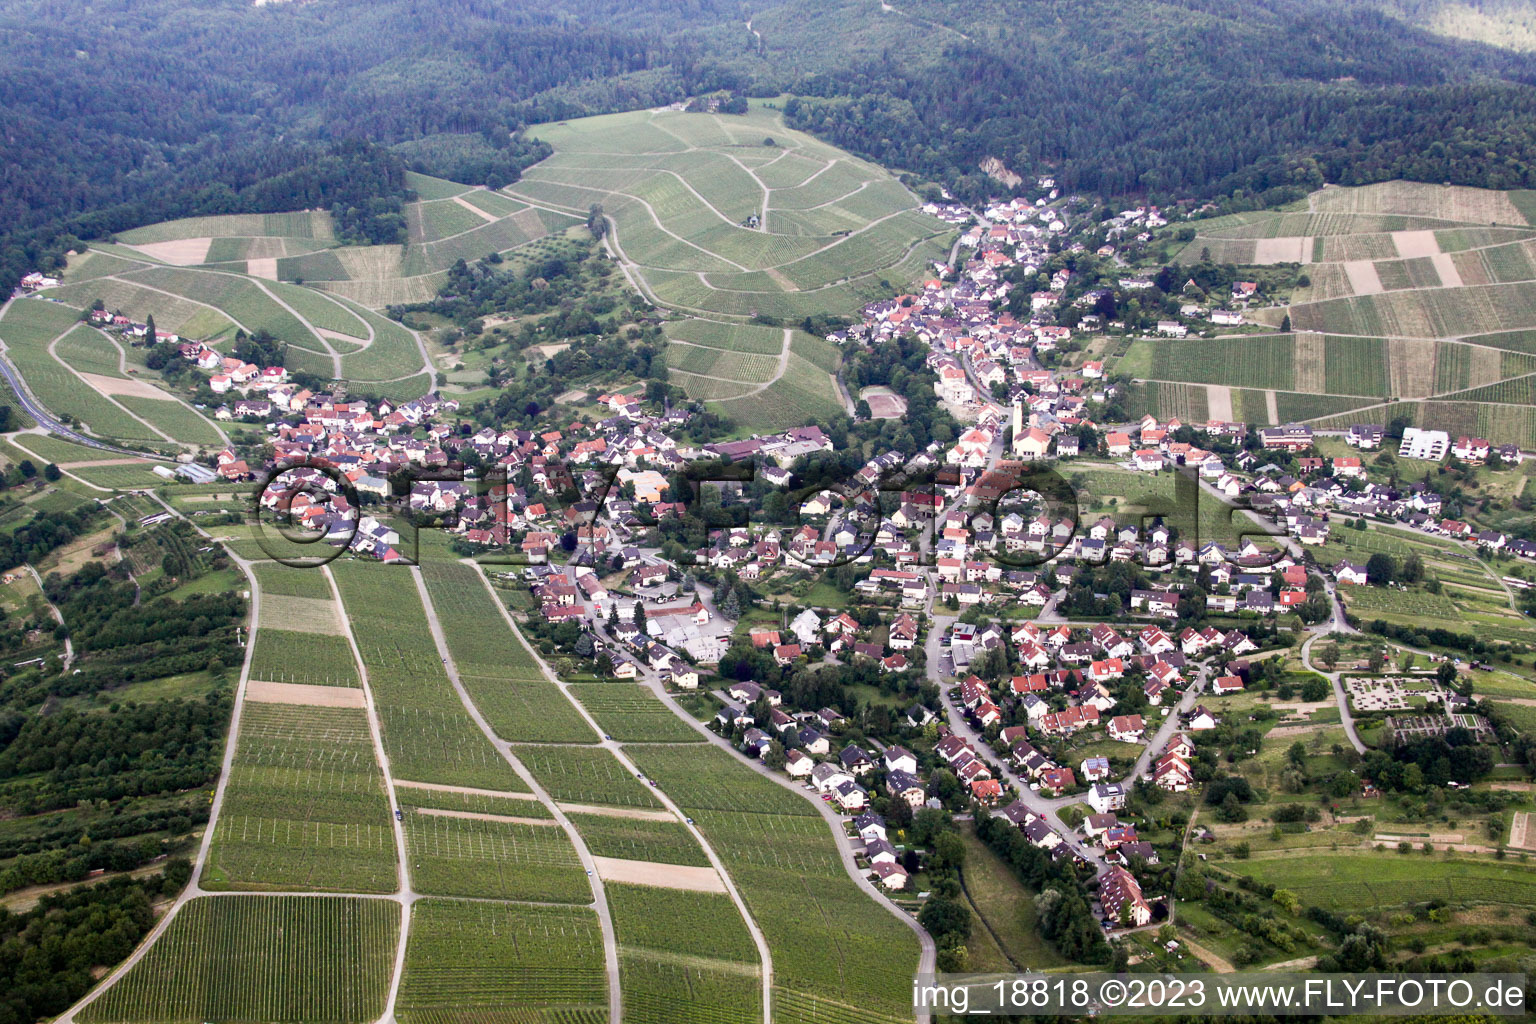 Luftbild von Ortsteil Gallenbach in Baden-Baden im Bundesland Baden-Württemberg, Deutschland